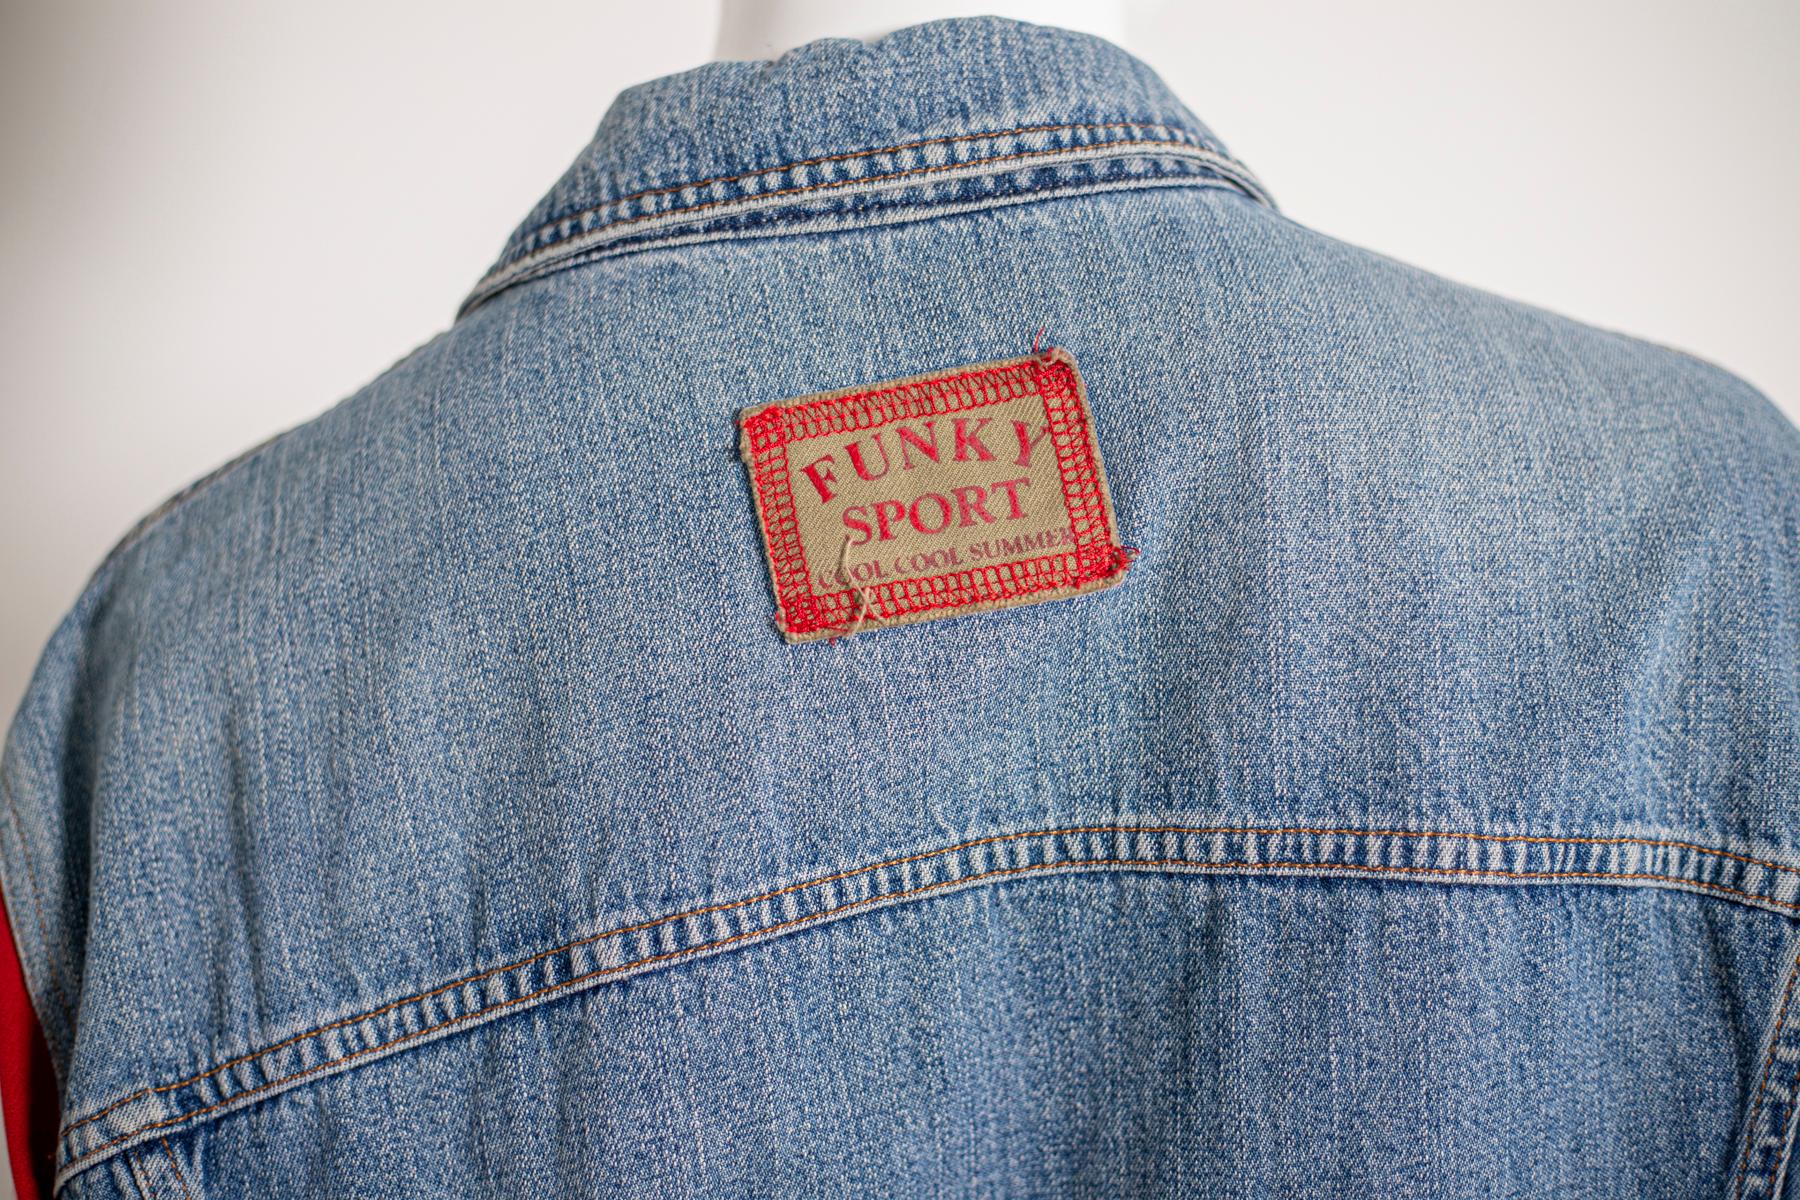 Dolce & Gabbana Vintage Jeans Jacket, Original Label For Sale 6